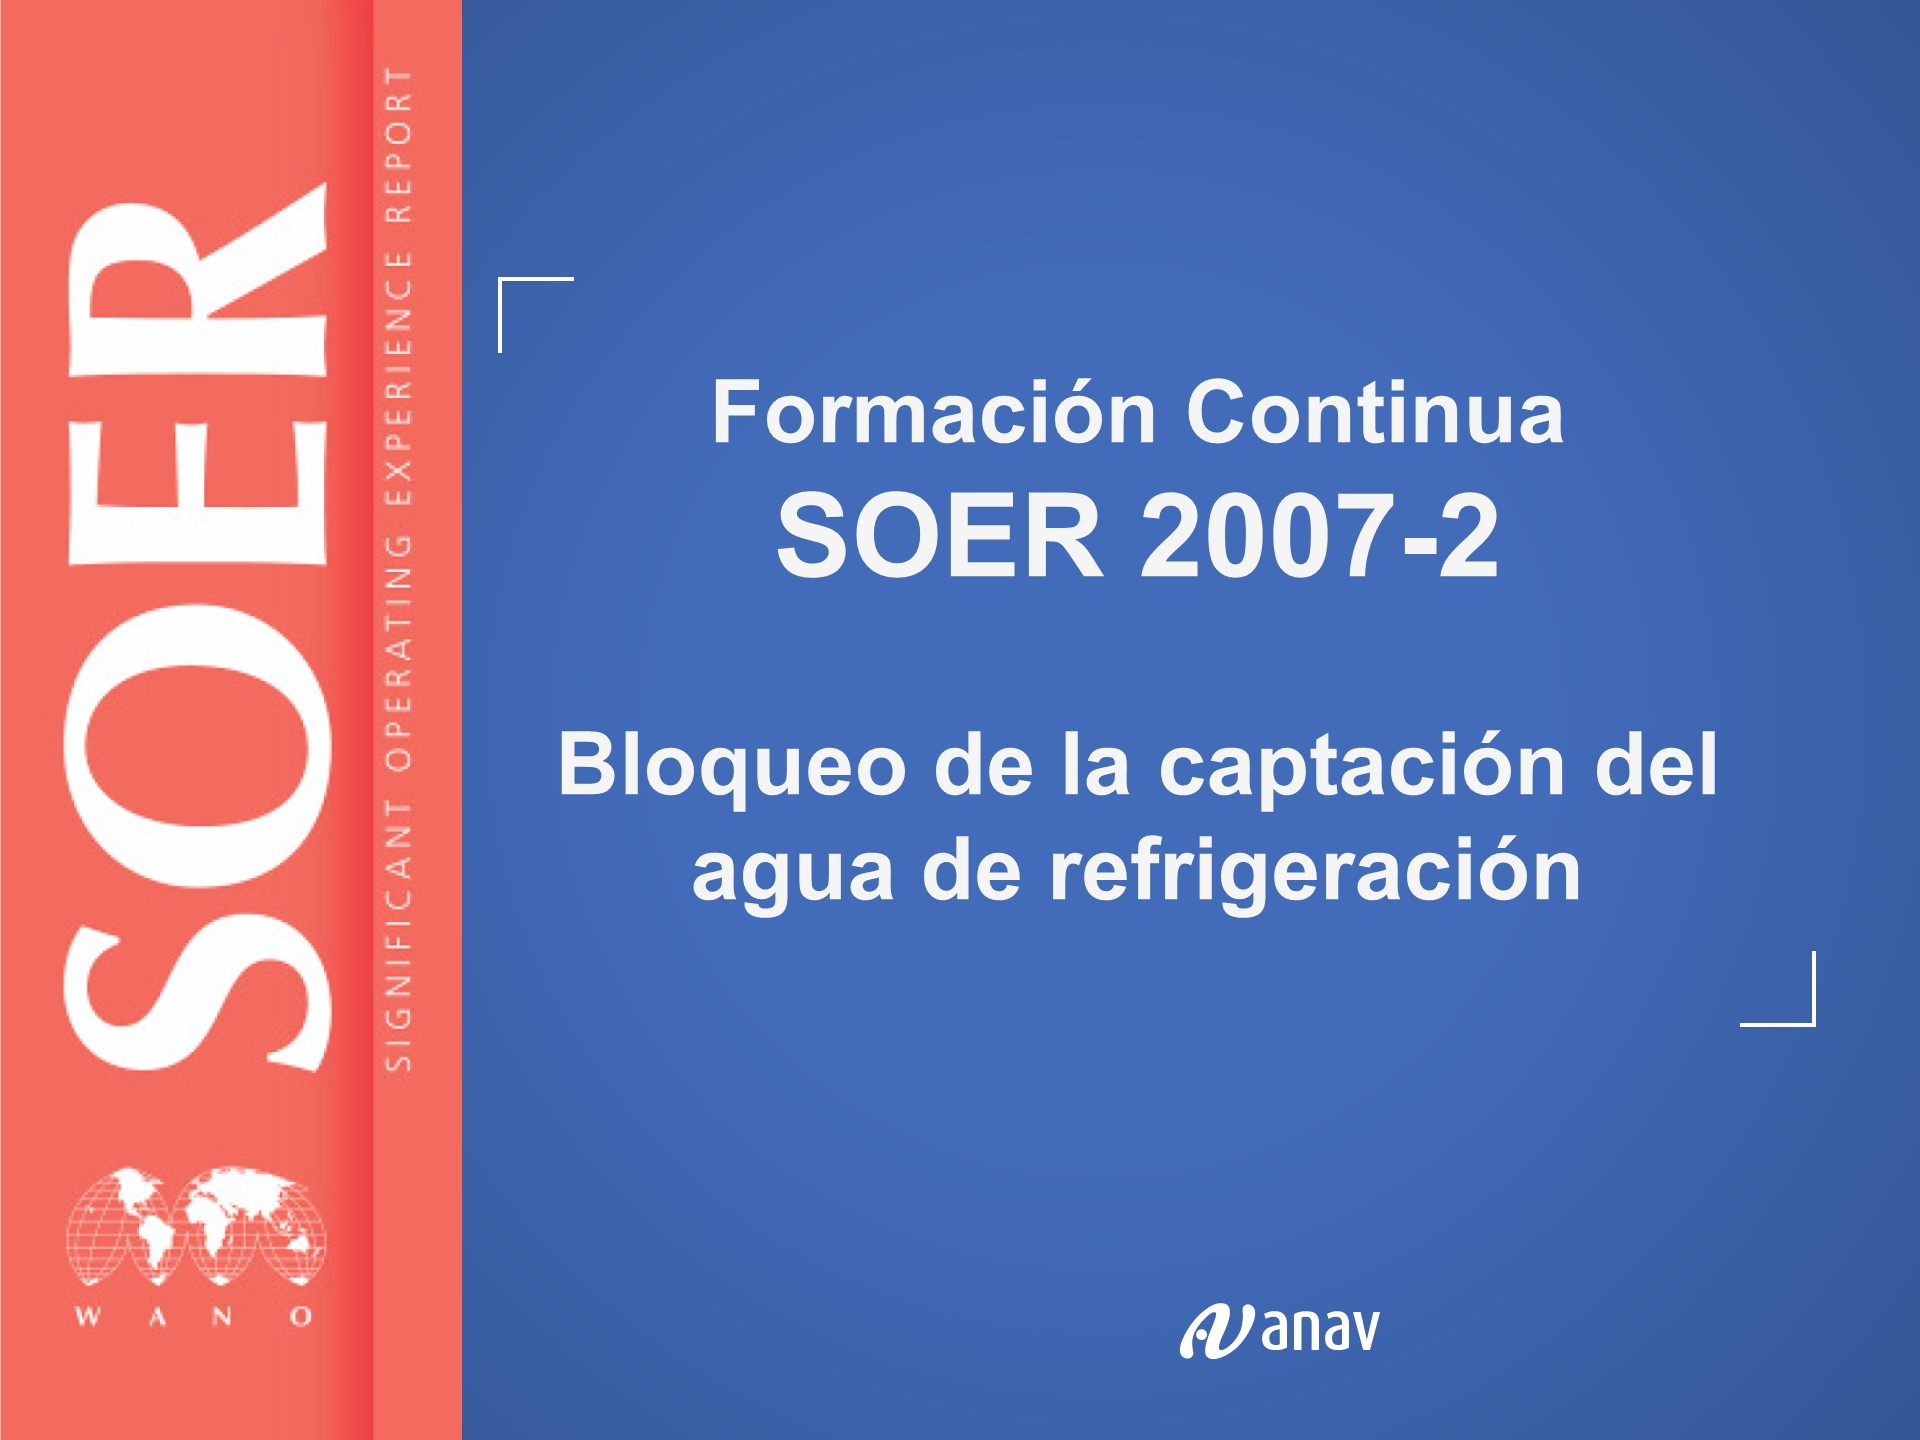 SOER 2007-2 Bloqueo Captación Agua Refrigeración (HORAS: 2)